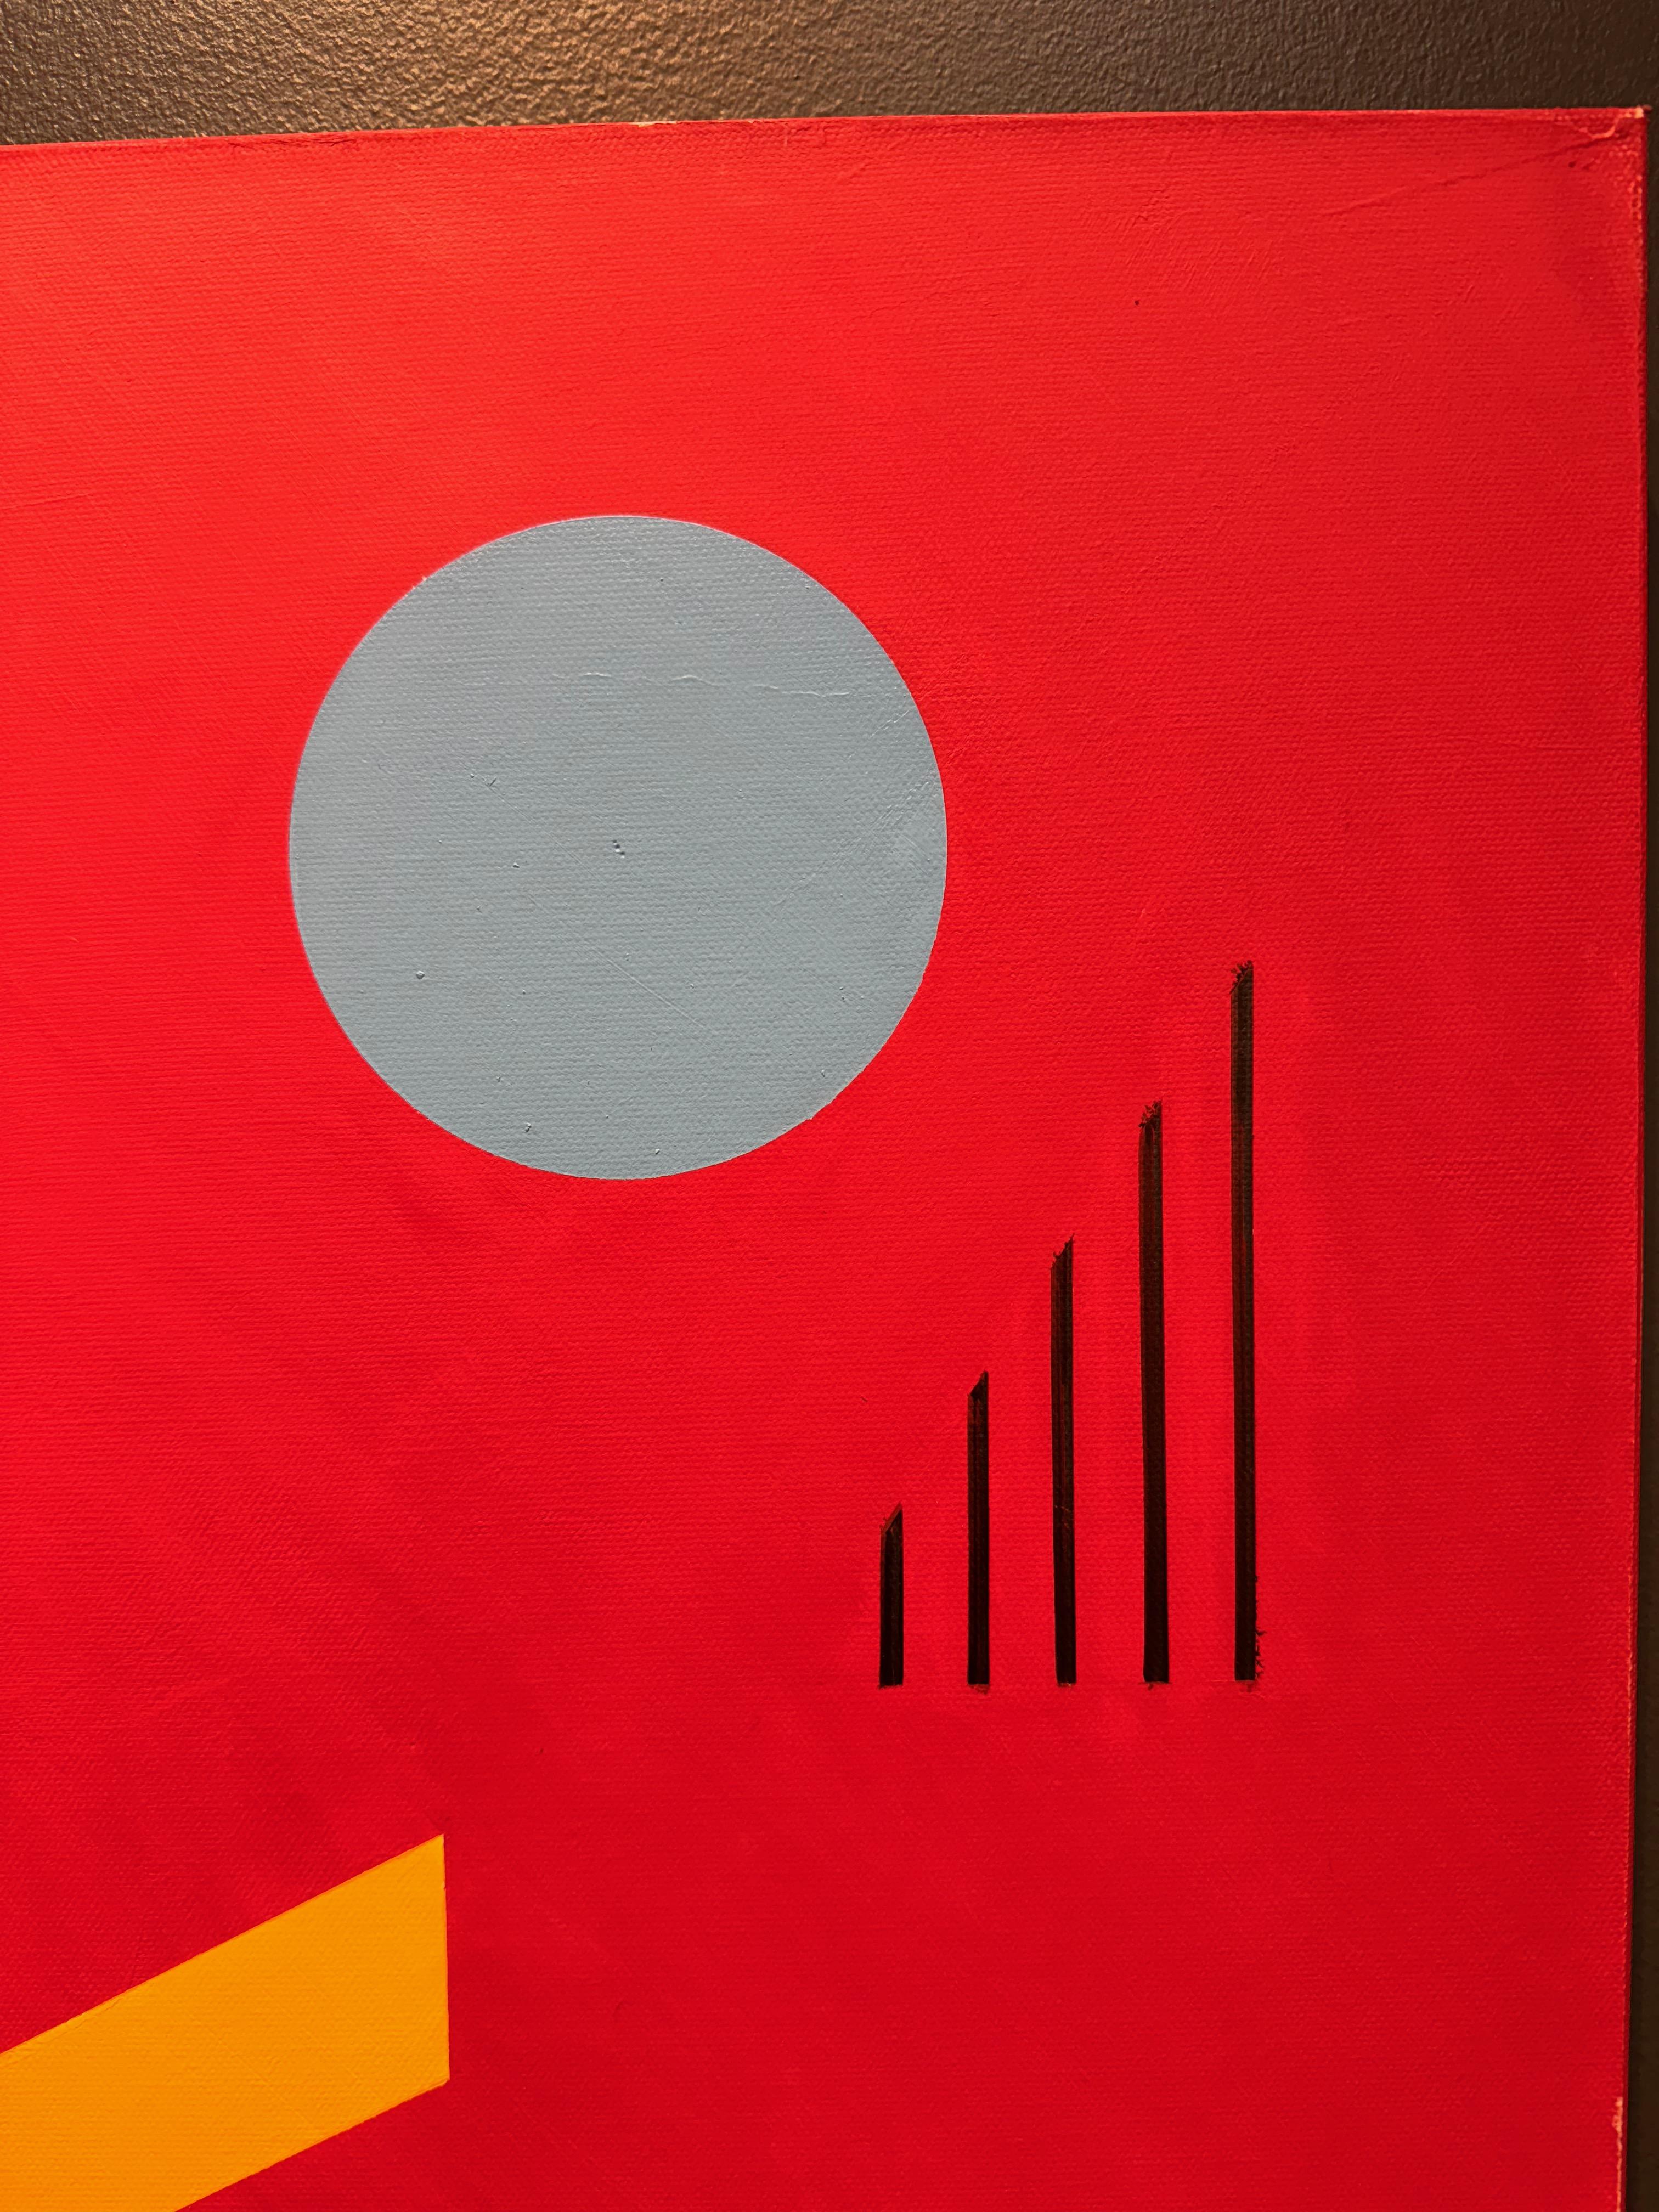 Trio auf Rot Geometrisches abstraktes Ölgemälde
Verso vom Künstler signiert, Öl auf Leinwand 48x24
JARO wurde 1934 in Prag in der Tschechischen Republik geboren. Seit seiner Kindheit genoss er den Kunstunterricht in der Schule am meisten. Fast jede